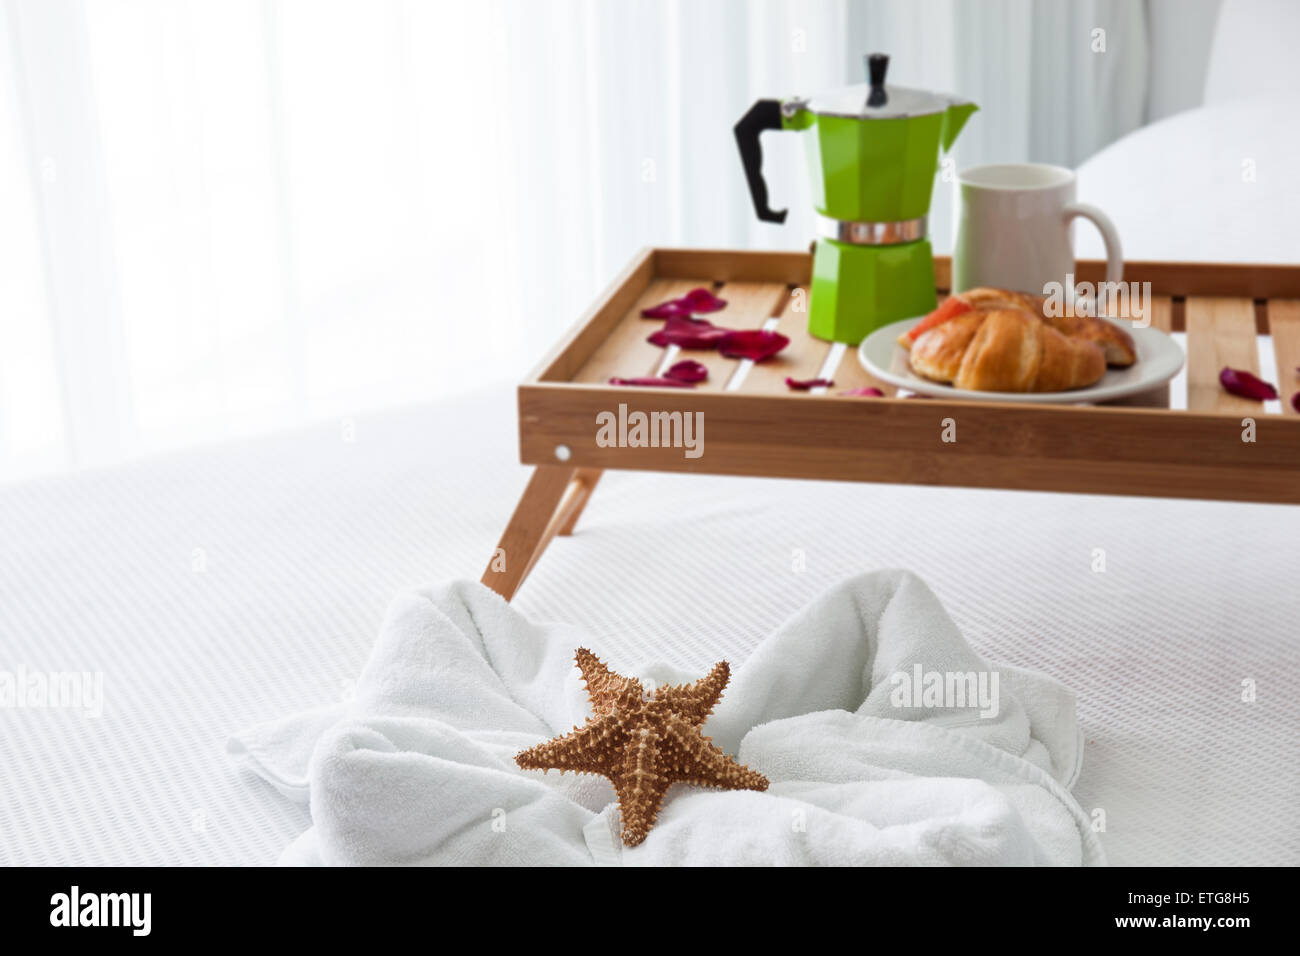 Frühstück Holztablett mit Kaffeemaschine und ein Croissant auf Bett, dekorierte Seestern auf weißen Handtuch Stockfoto